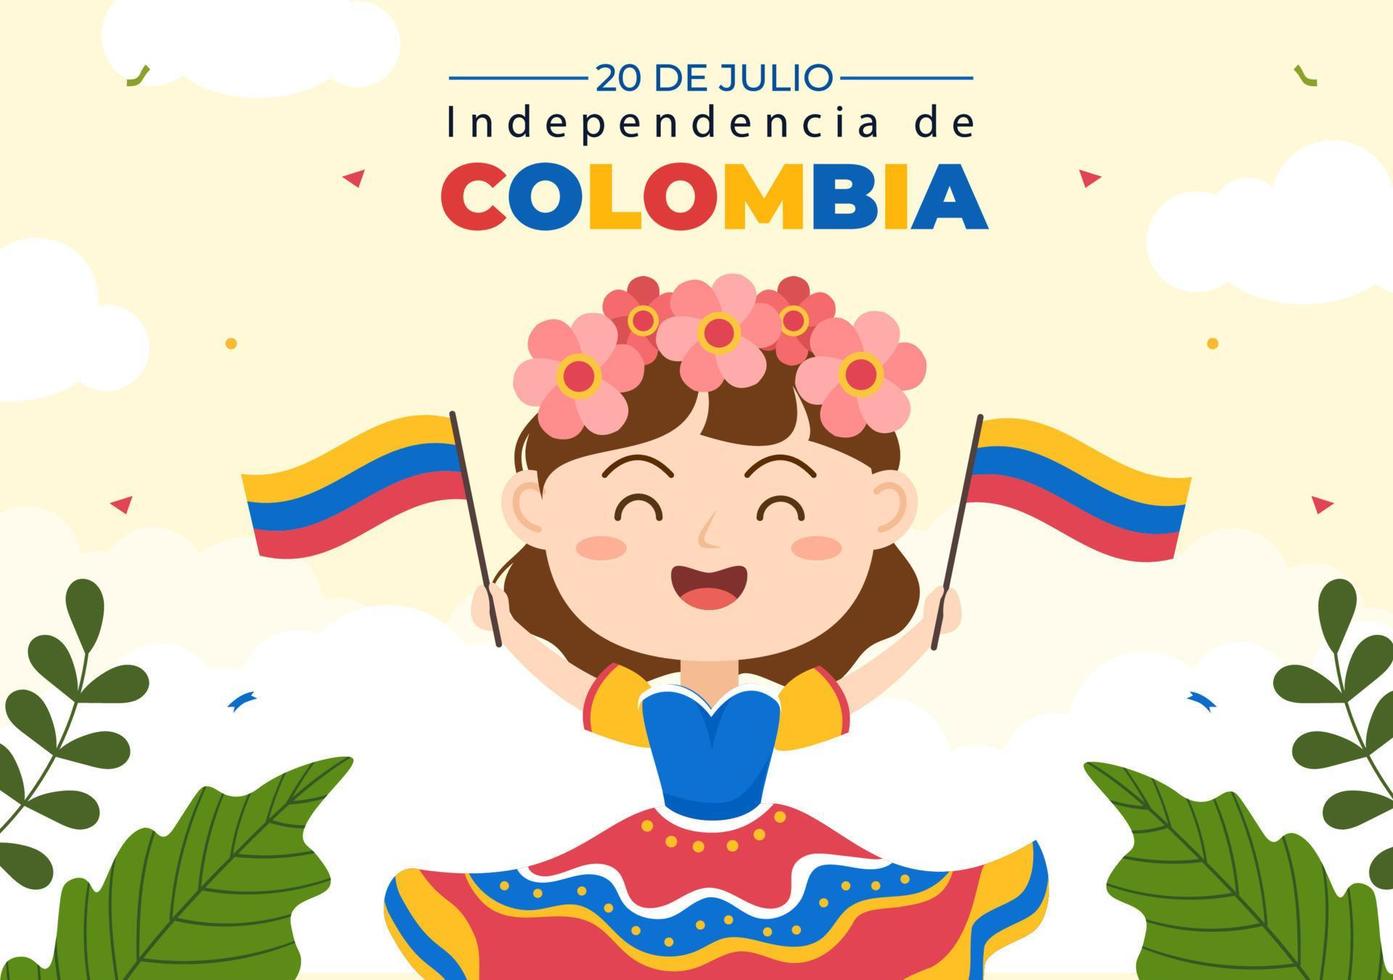 20 de julio independencia de colombia cartoon ilustração com bandeiras, balões e personagens de crianças fofas para design de pôster vetor